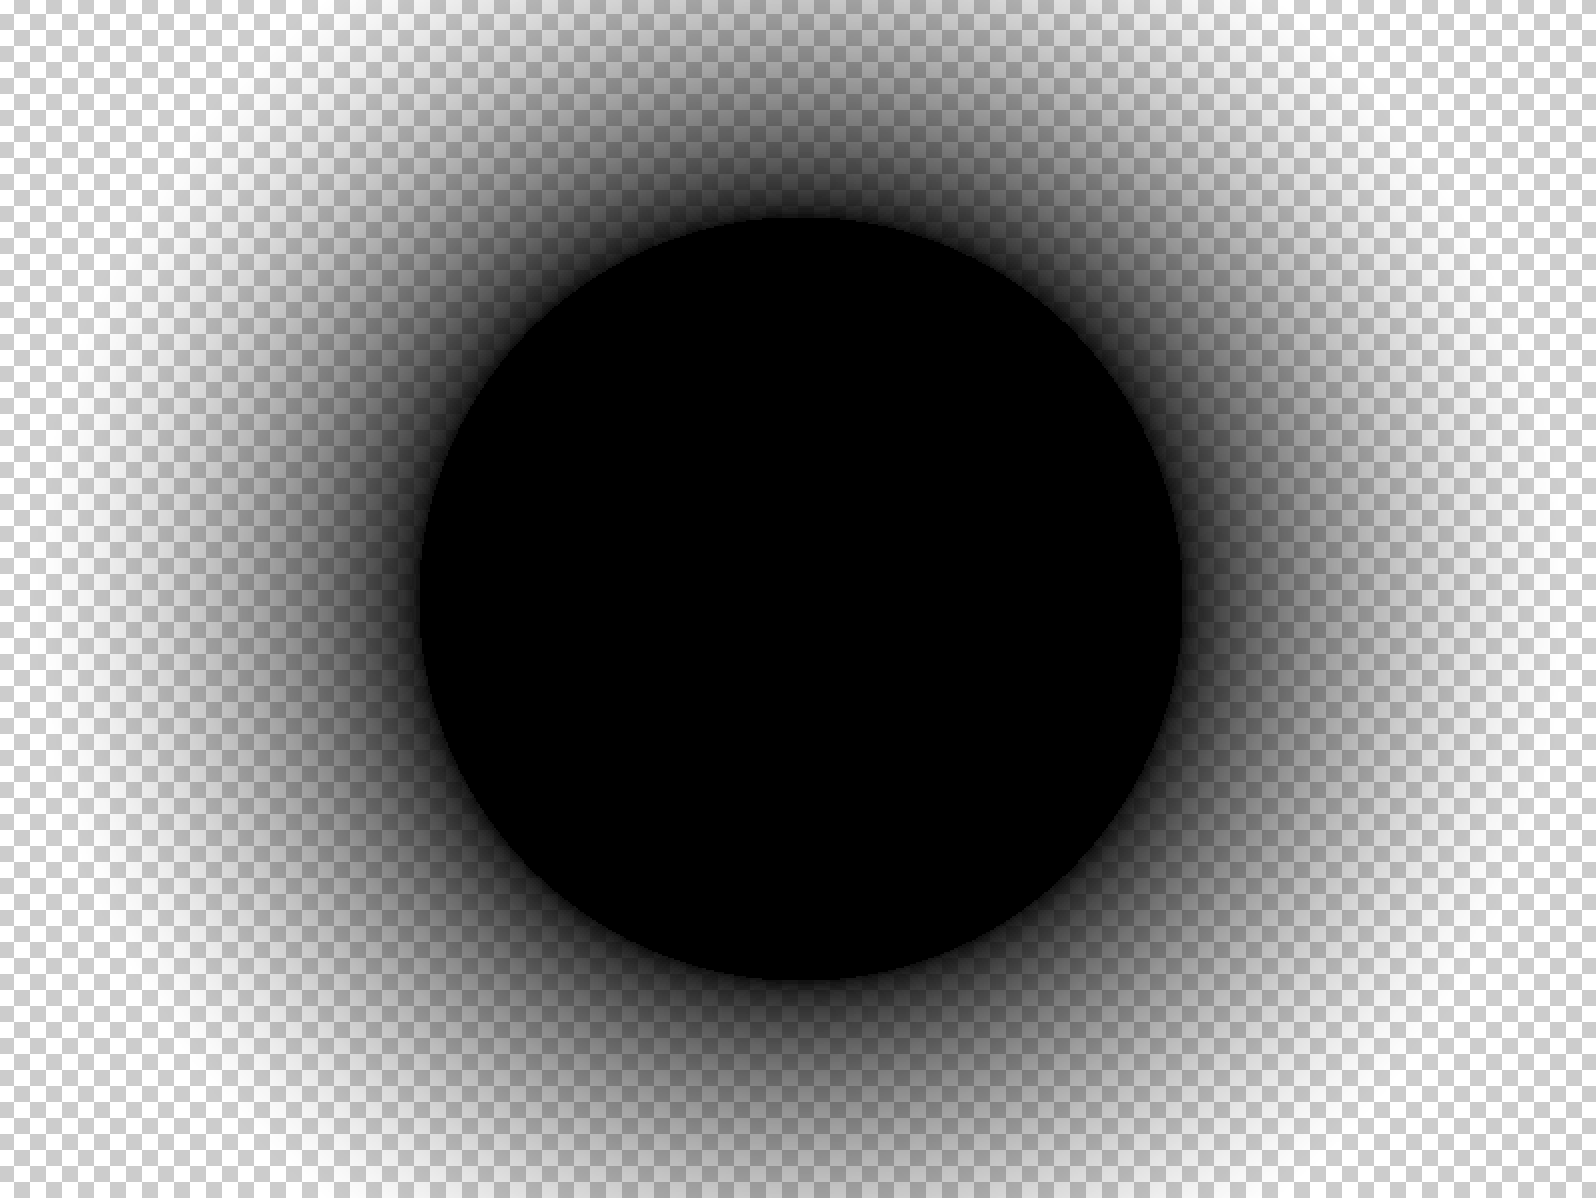 Эффект тени. Круглая маска для обс. Черный круг. Тень на прозрачном фоне. Затемненный круг.